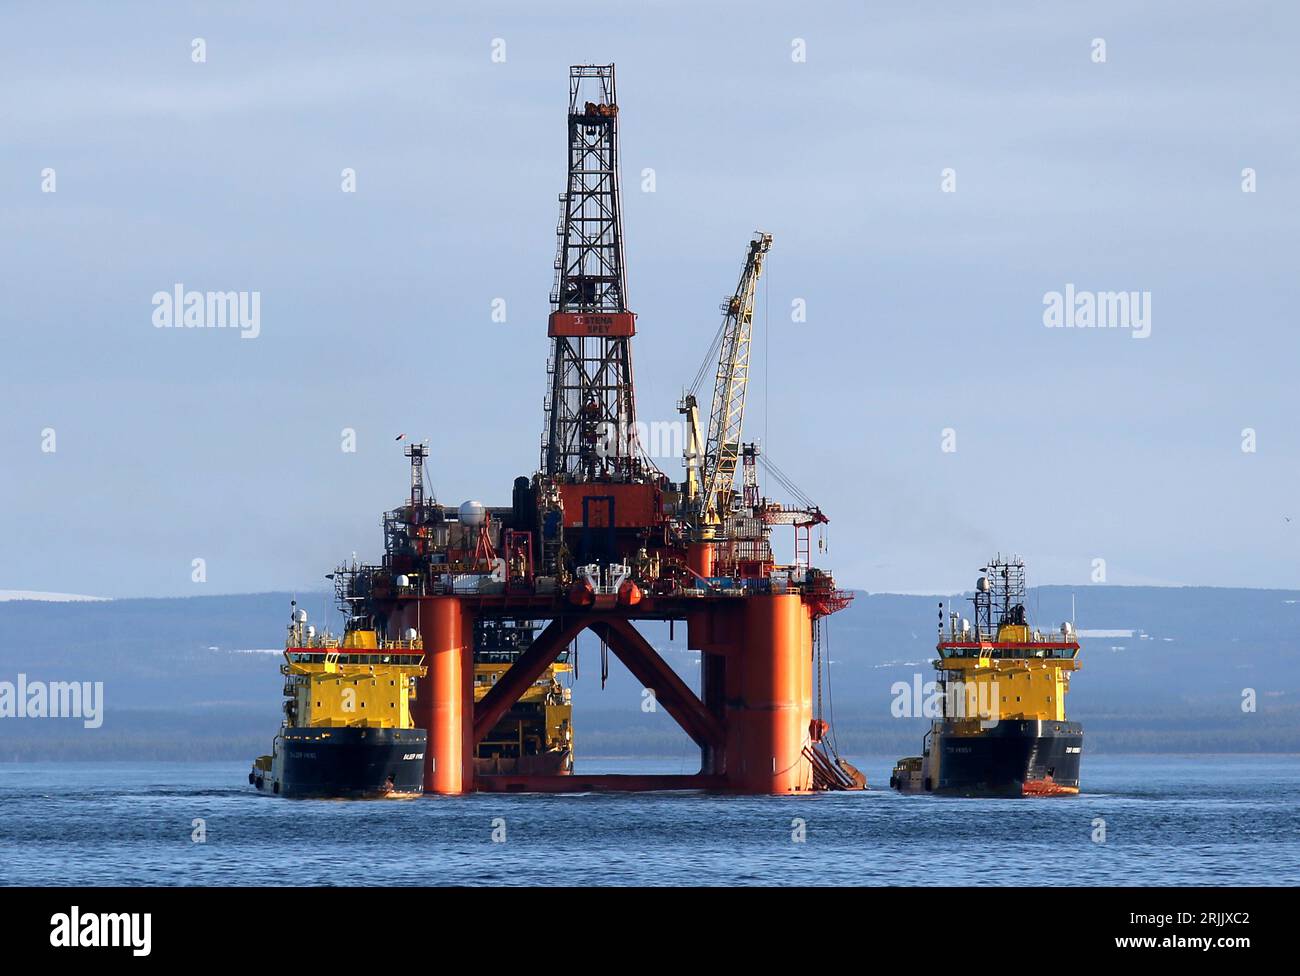 Dateifoto vom 15/02/2016 der Ölplattform Stena Spey wird mit Schleppbooten unter anderen Rigs bewegt, die im Cromarty Firth bei Invergordon in den schottischen Highlands zurückgelassen wurden. Shell und BP gehören zu 12 Ölfirmen, denen wegen der Menge an erneuerbarer und kohlenstoffarmer Energie, die sie produzieren, Greenwashing vorgeworfen wurde. Die von Greenpeace in Auftrag gegebene Forschung analysierte die Jahresberichte der britischen Giganten fossiler Brennstoffe für 2022, zusammen mit zehn weiteren europäischen Unternehmen. In dem Bericht wurde die von den Unternehmen erzeugte Menge an erneuerbarem Strom mit der von ihnen pro Jahr erzeugten Menge an Energie verglichen Stockfoto